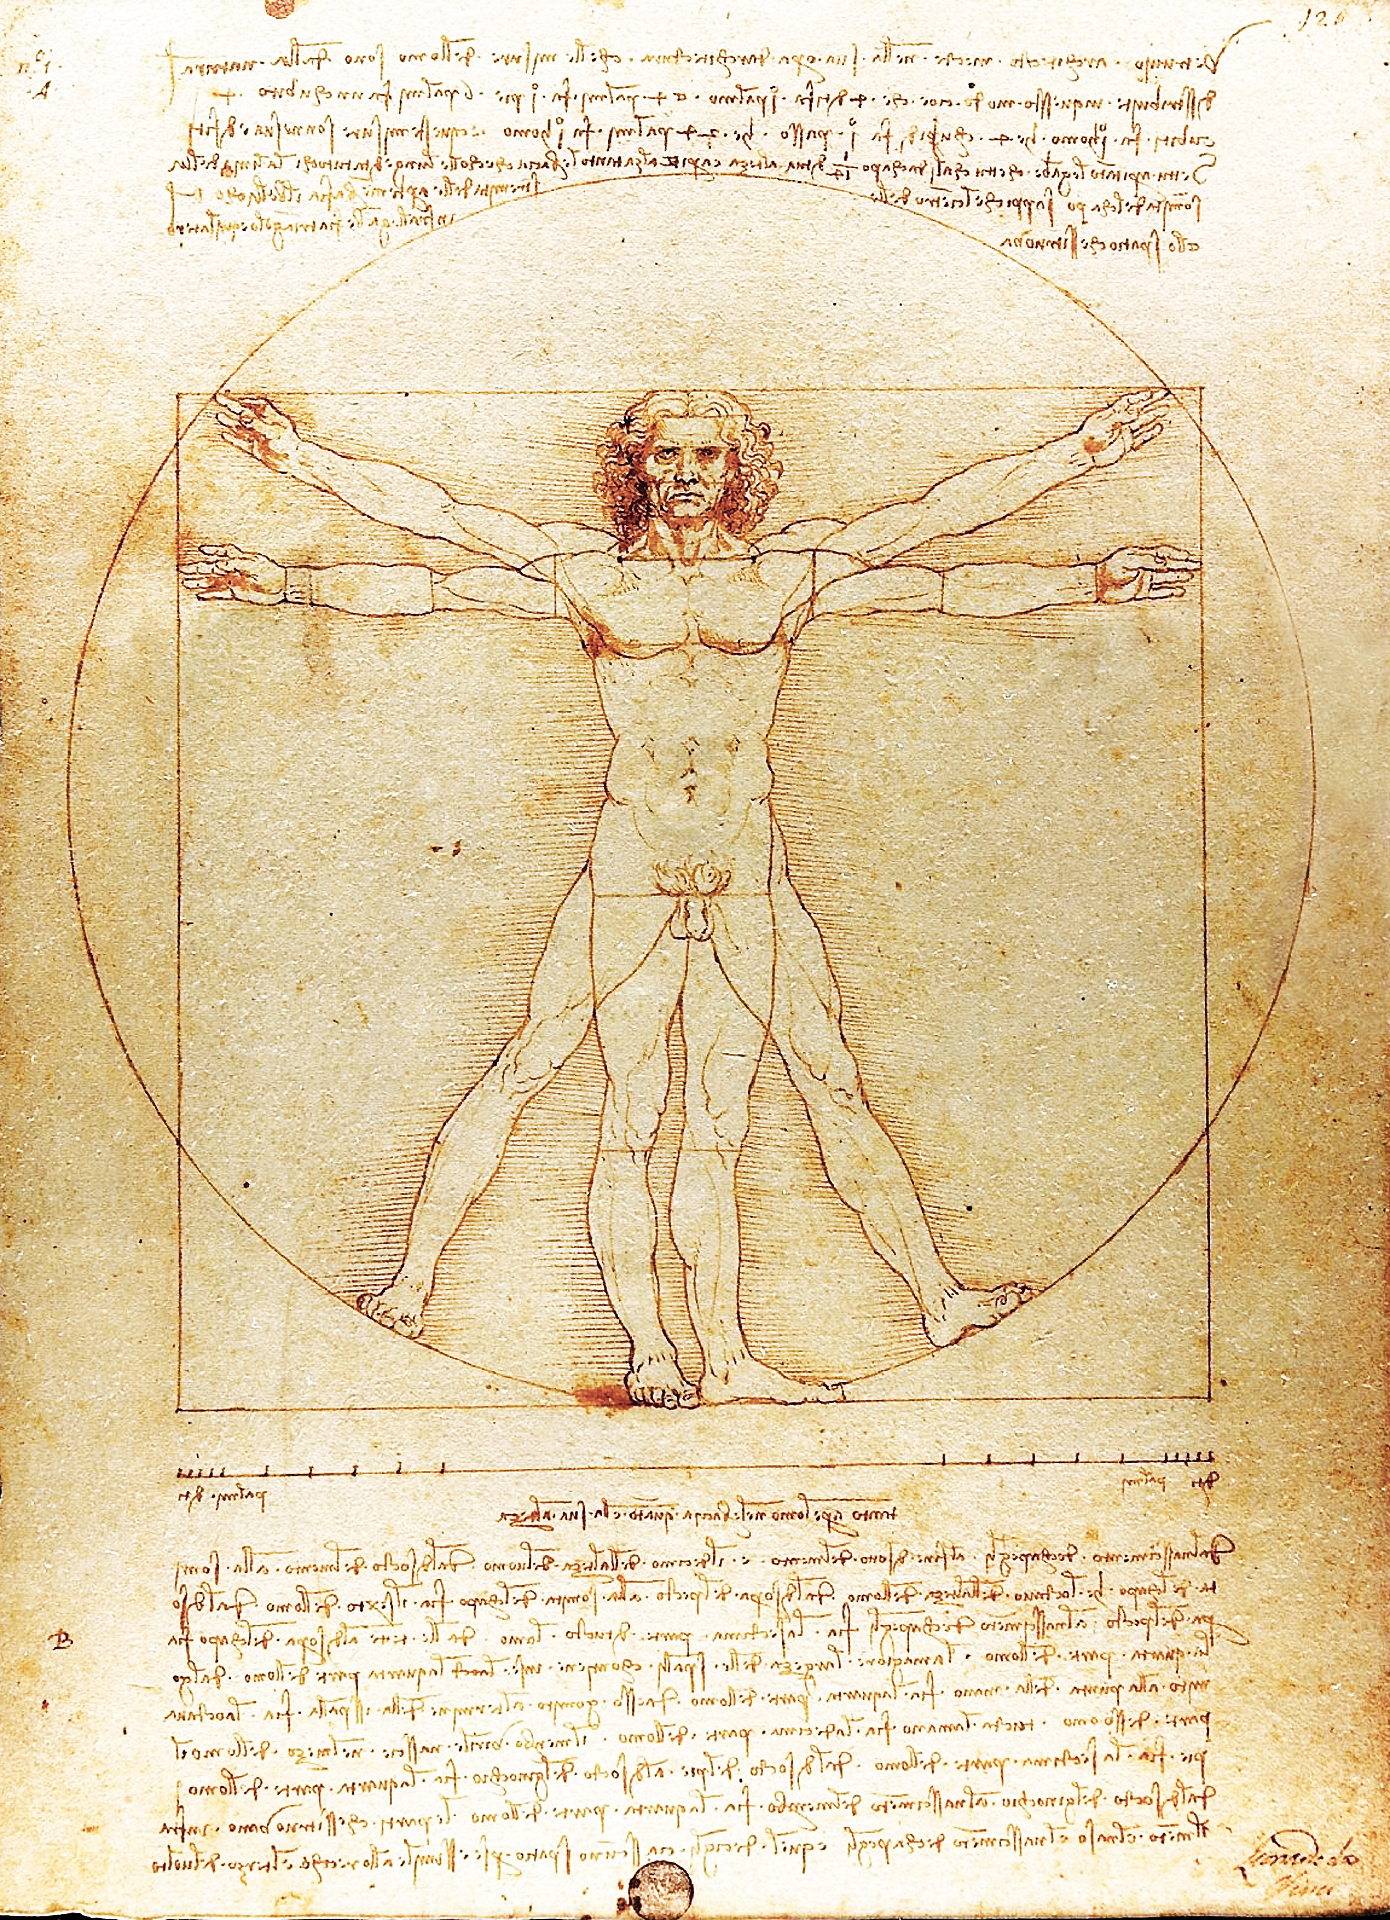 レオナルド ダ ヴィンチ ウィトルウィウス的人体図 Pc スマートフォンの壁紙 スマートマイズ